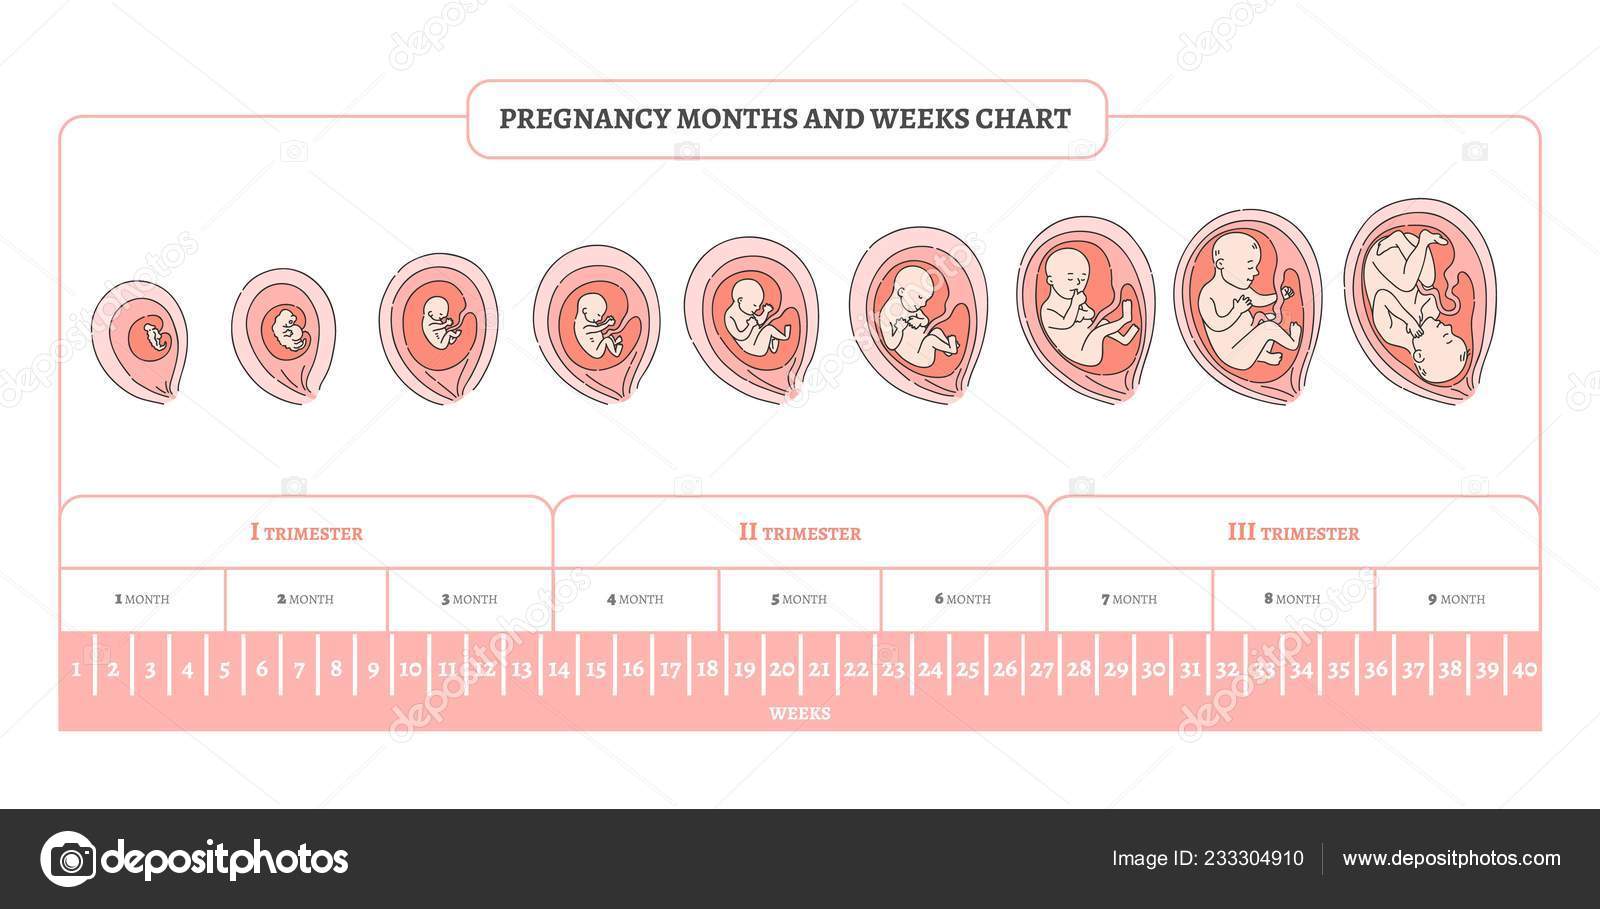 40 недель это месяцев. Периоды развития плода по неделям в картинках. Стадии формирования плода по неделям беременности. Триместры беременности по неделям и месяцам таблица. Периоды развития плода по триместрам.